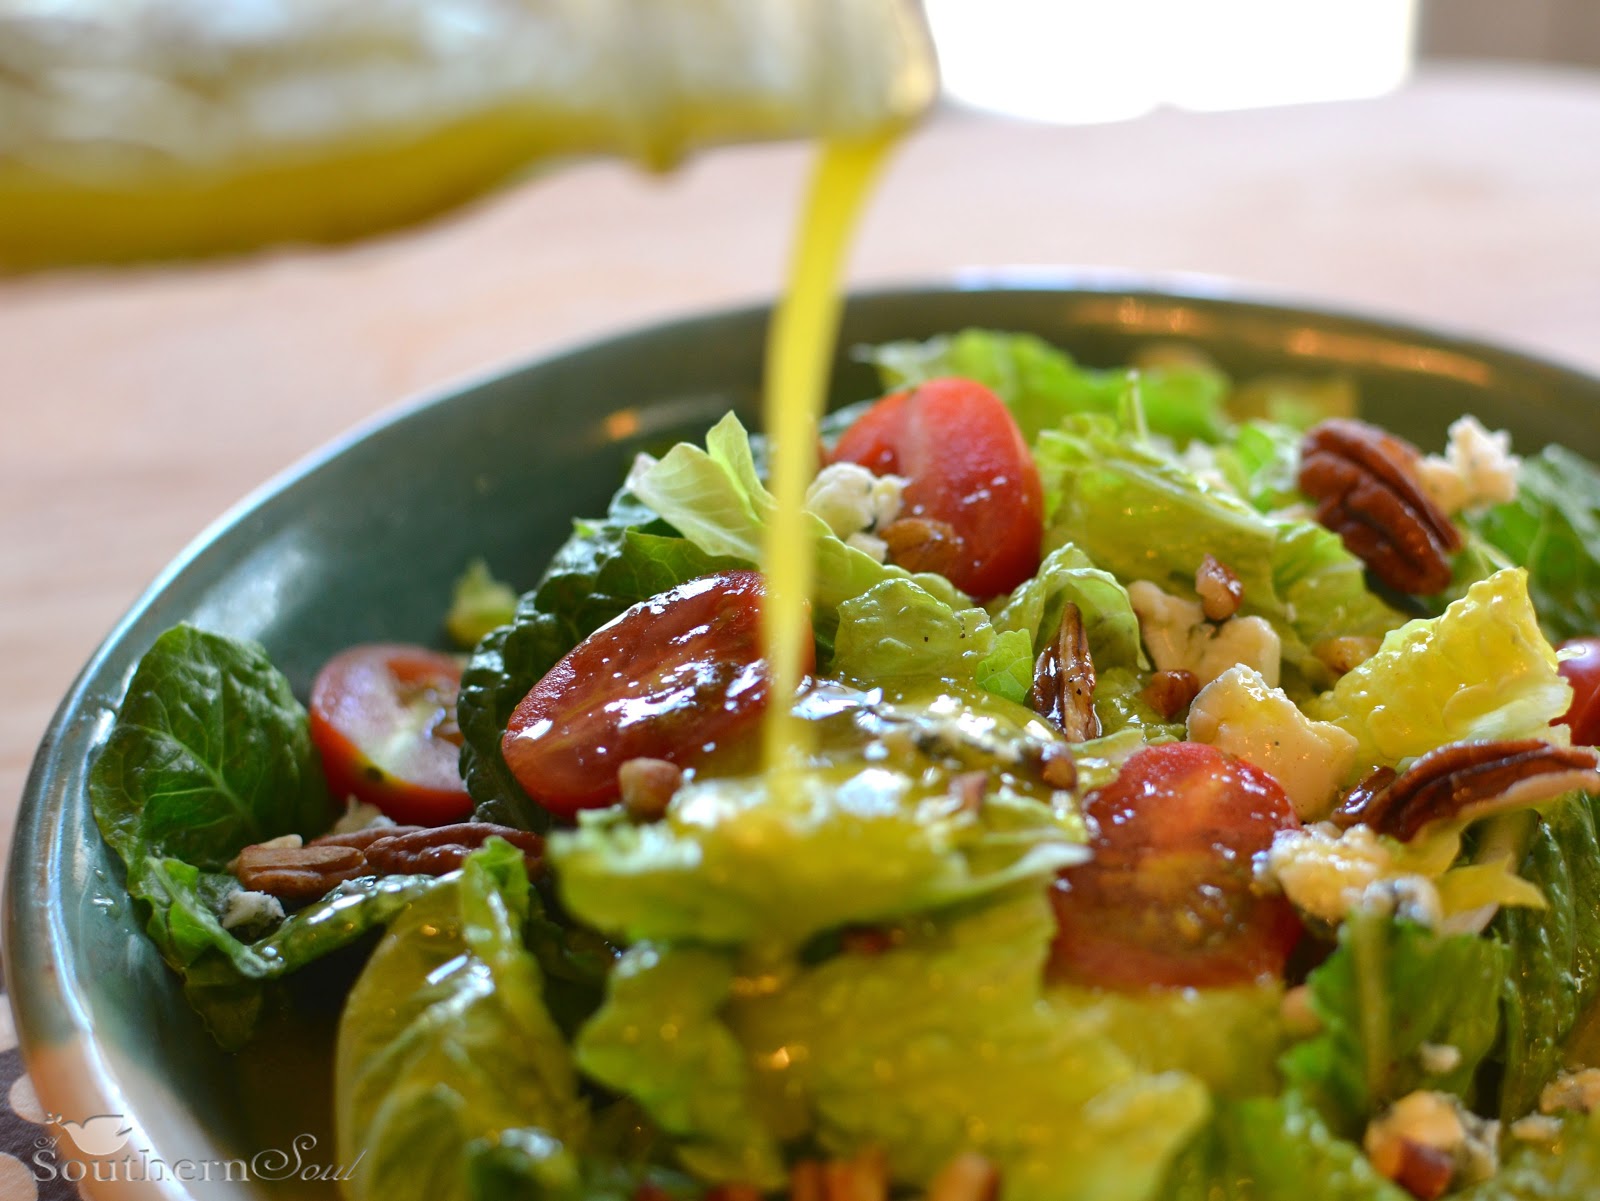 A Southern Soul: My Favorite Vinaigrette Salad Dressing